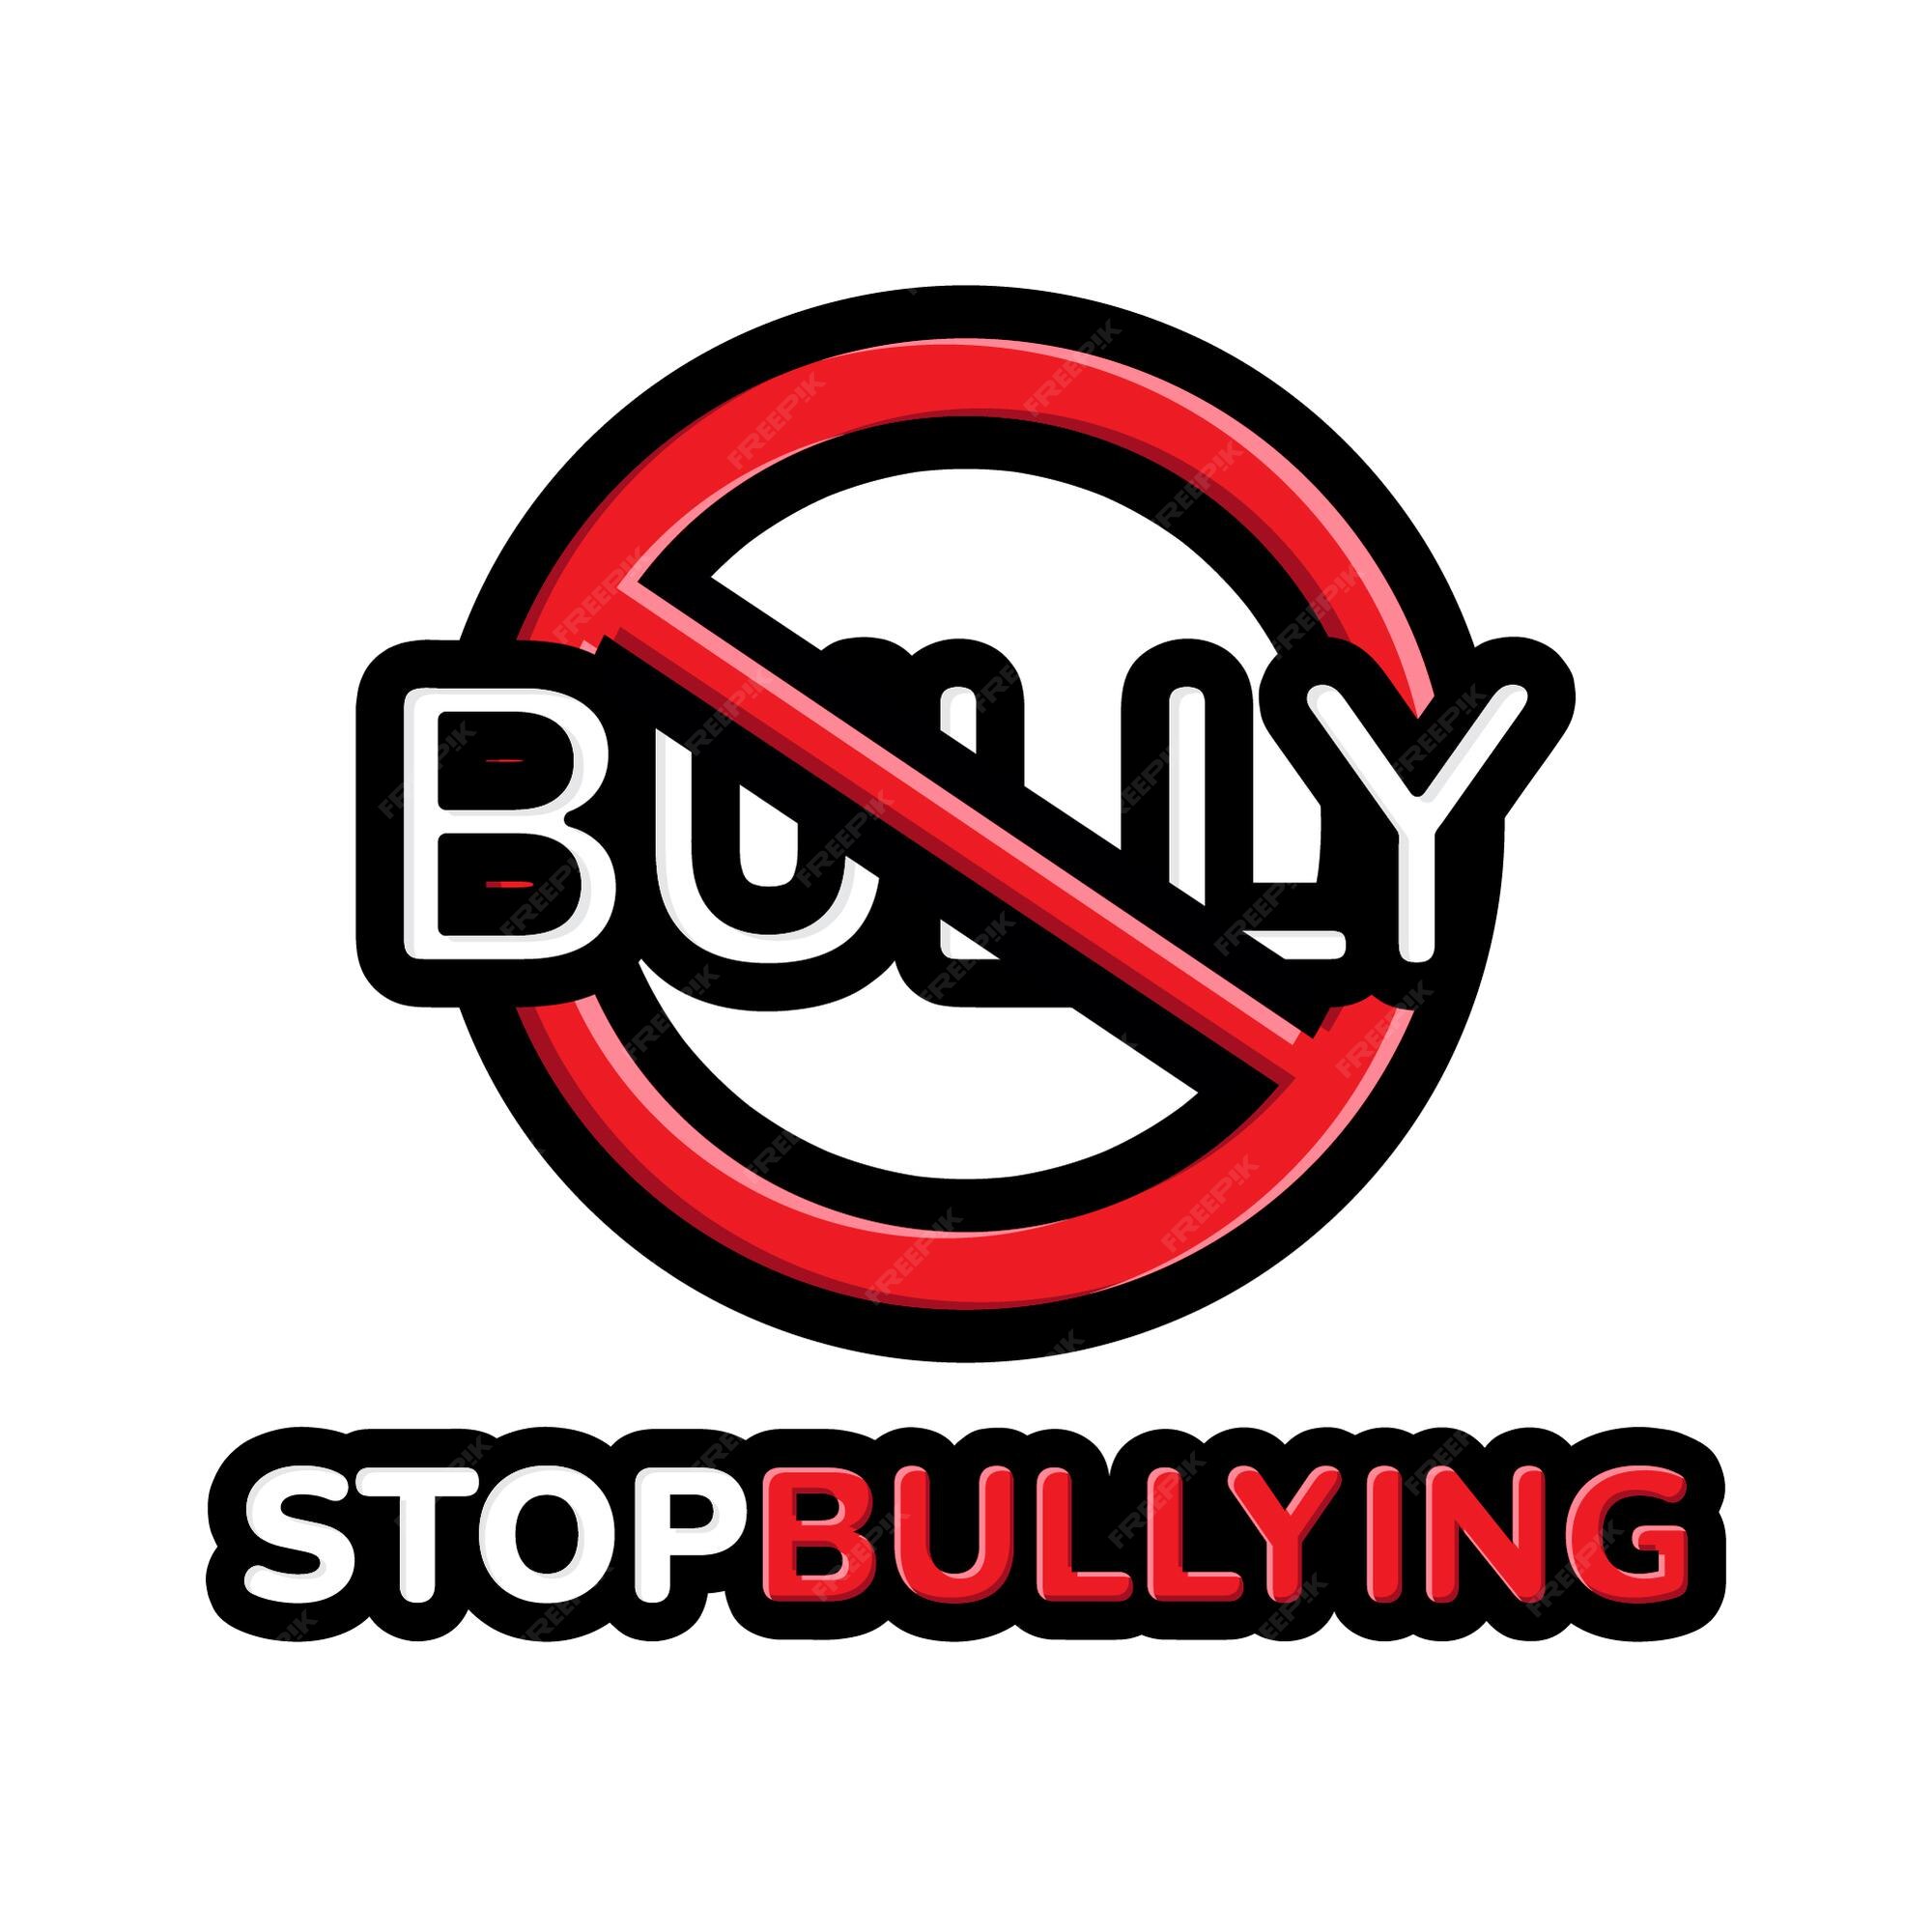 Premium Vector | Stop bullying design